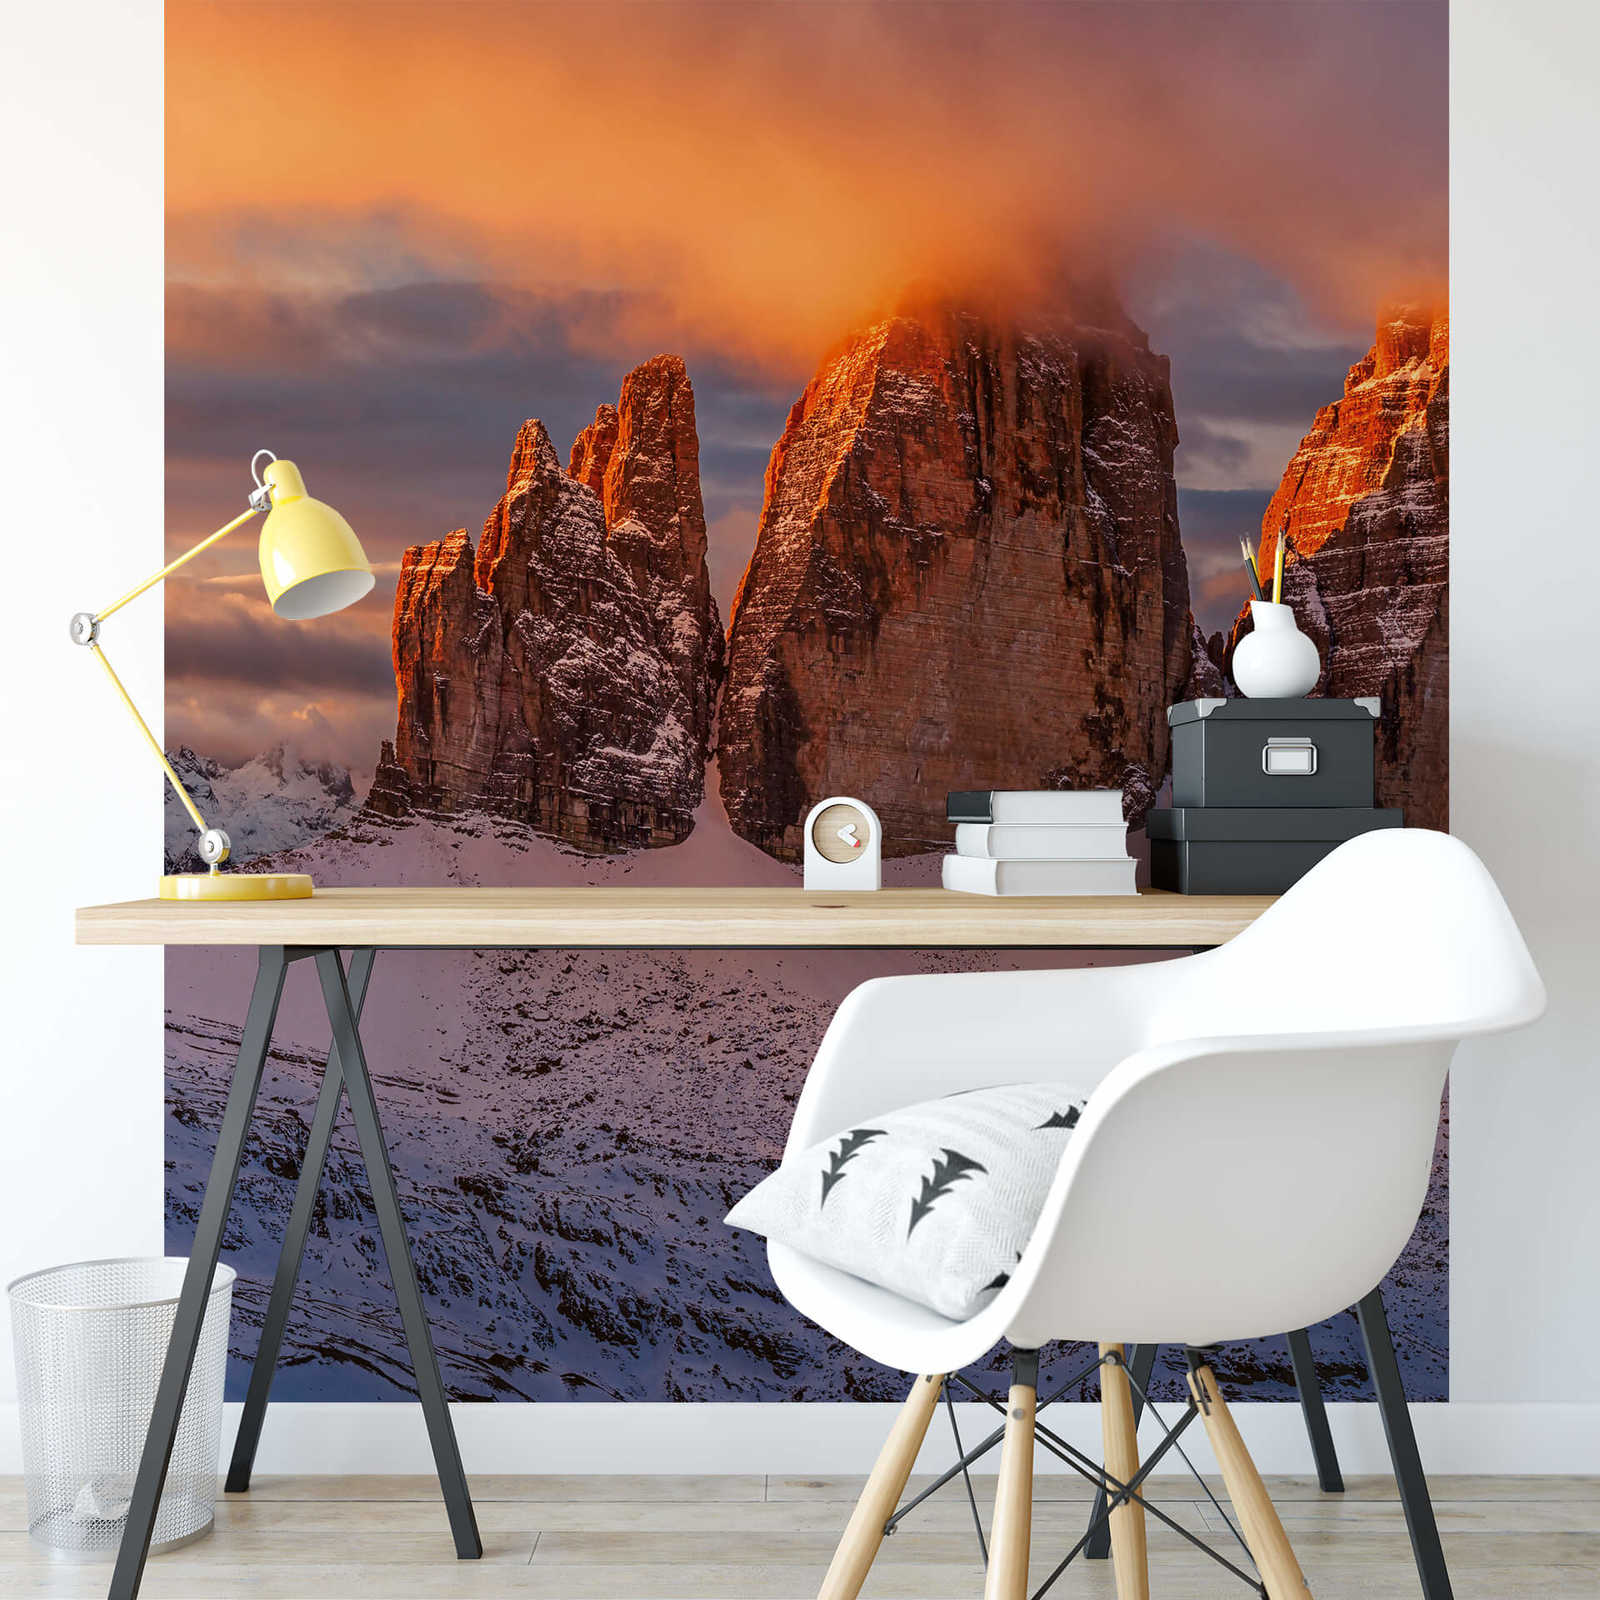             Papier peint panoramique sommet de montagne en Italie - blanc, marron, jaune
        